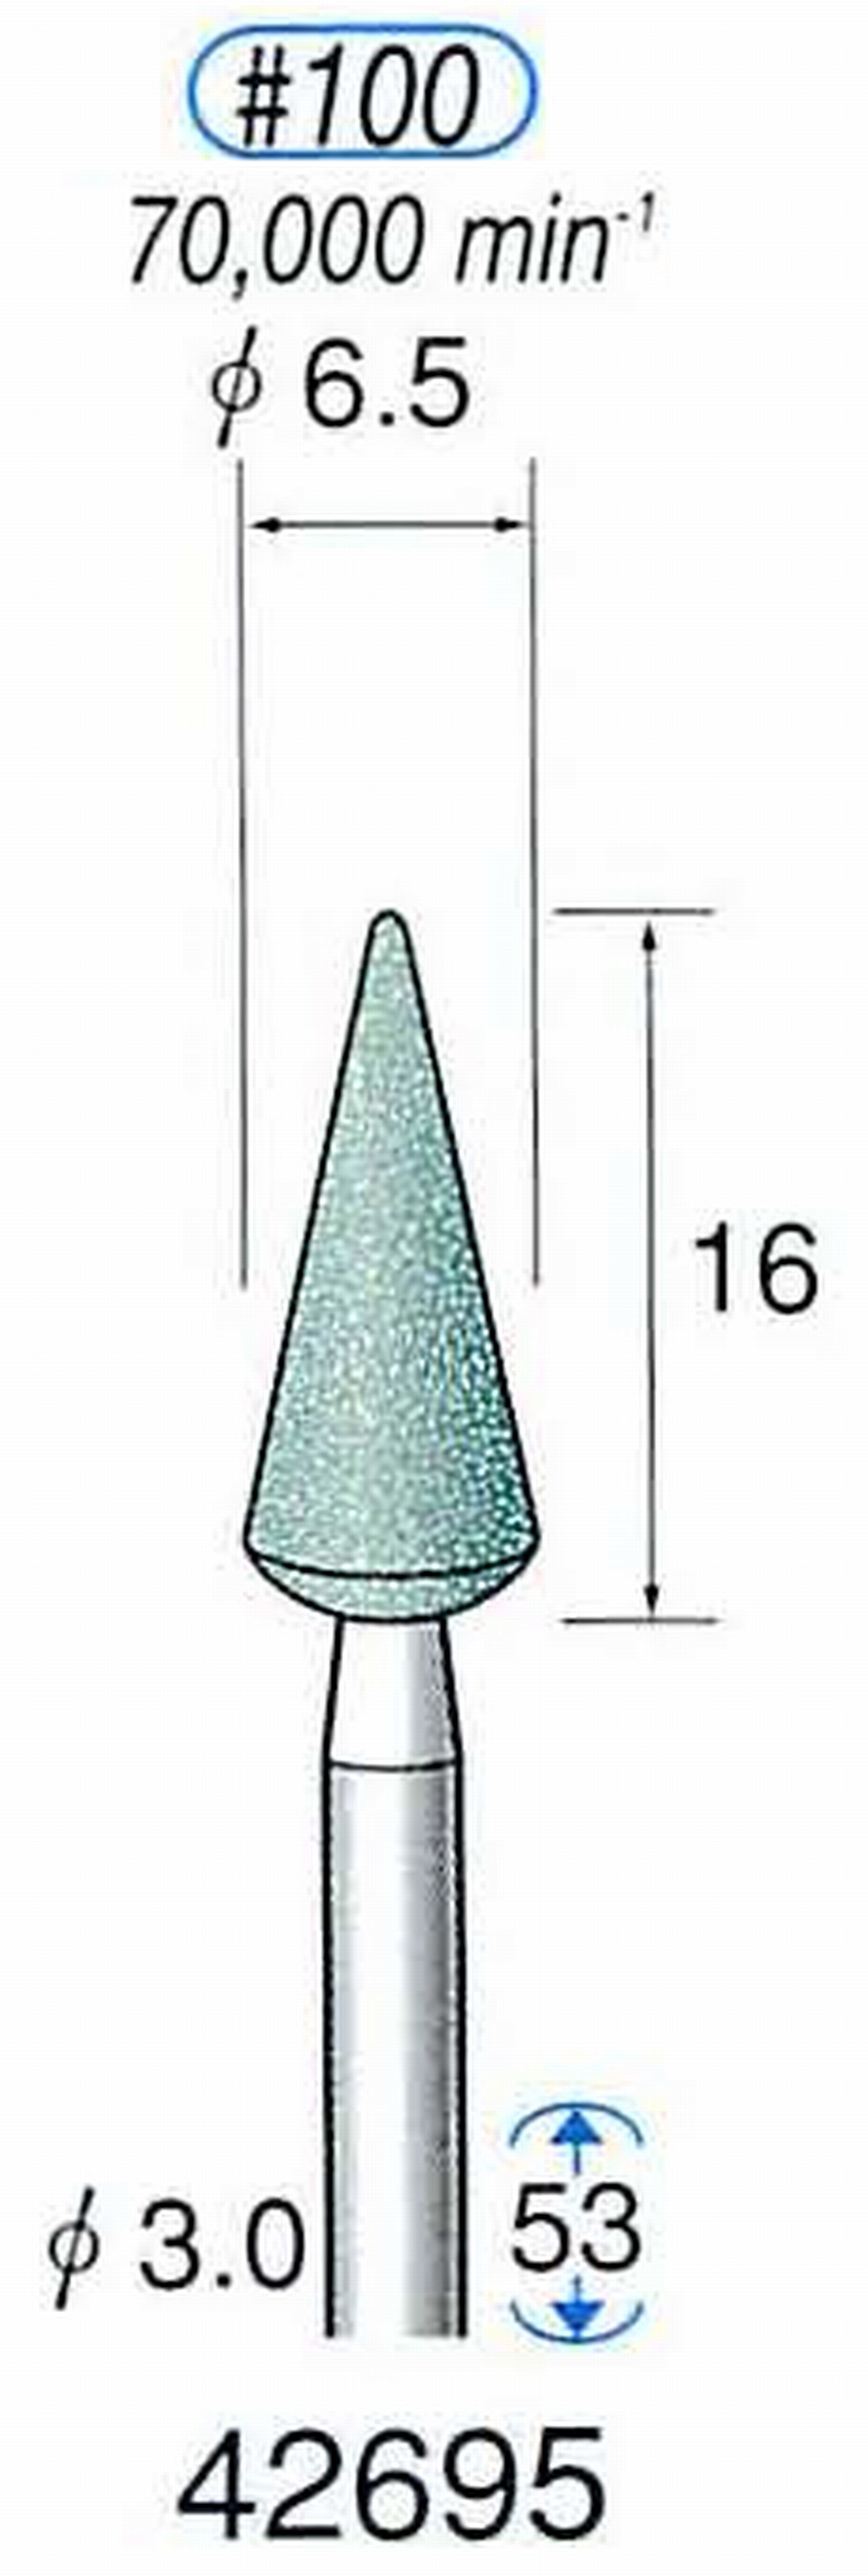 ナカニシ/NAKANISHI 軸付砥石(GC砥粒) グリーン砥石 軸径(シャンク) φ3.0mm 42695